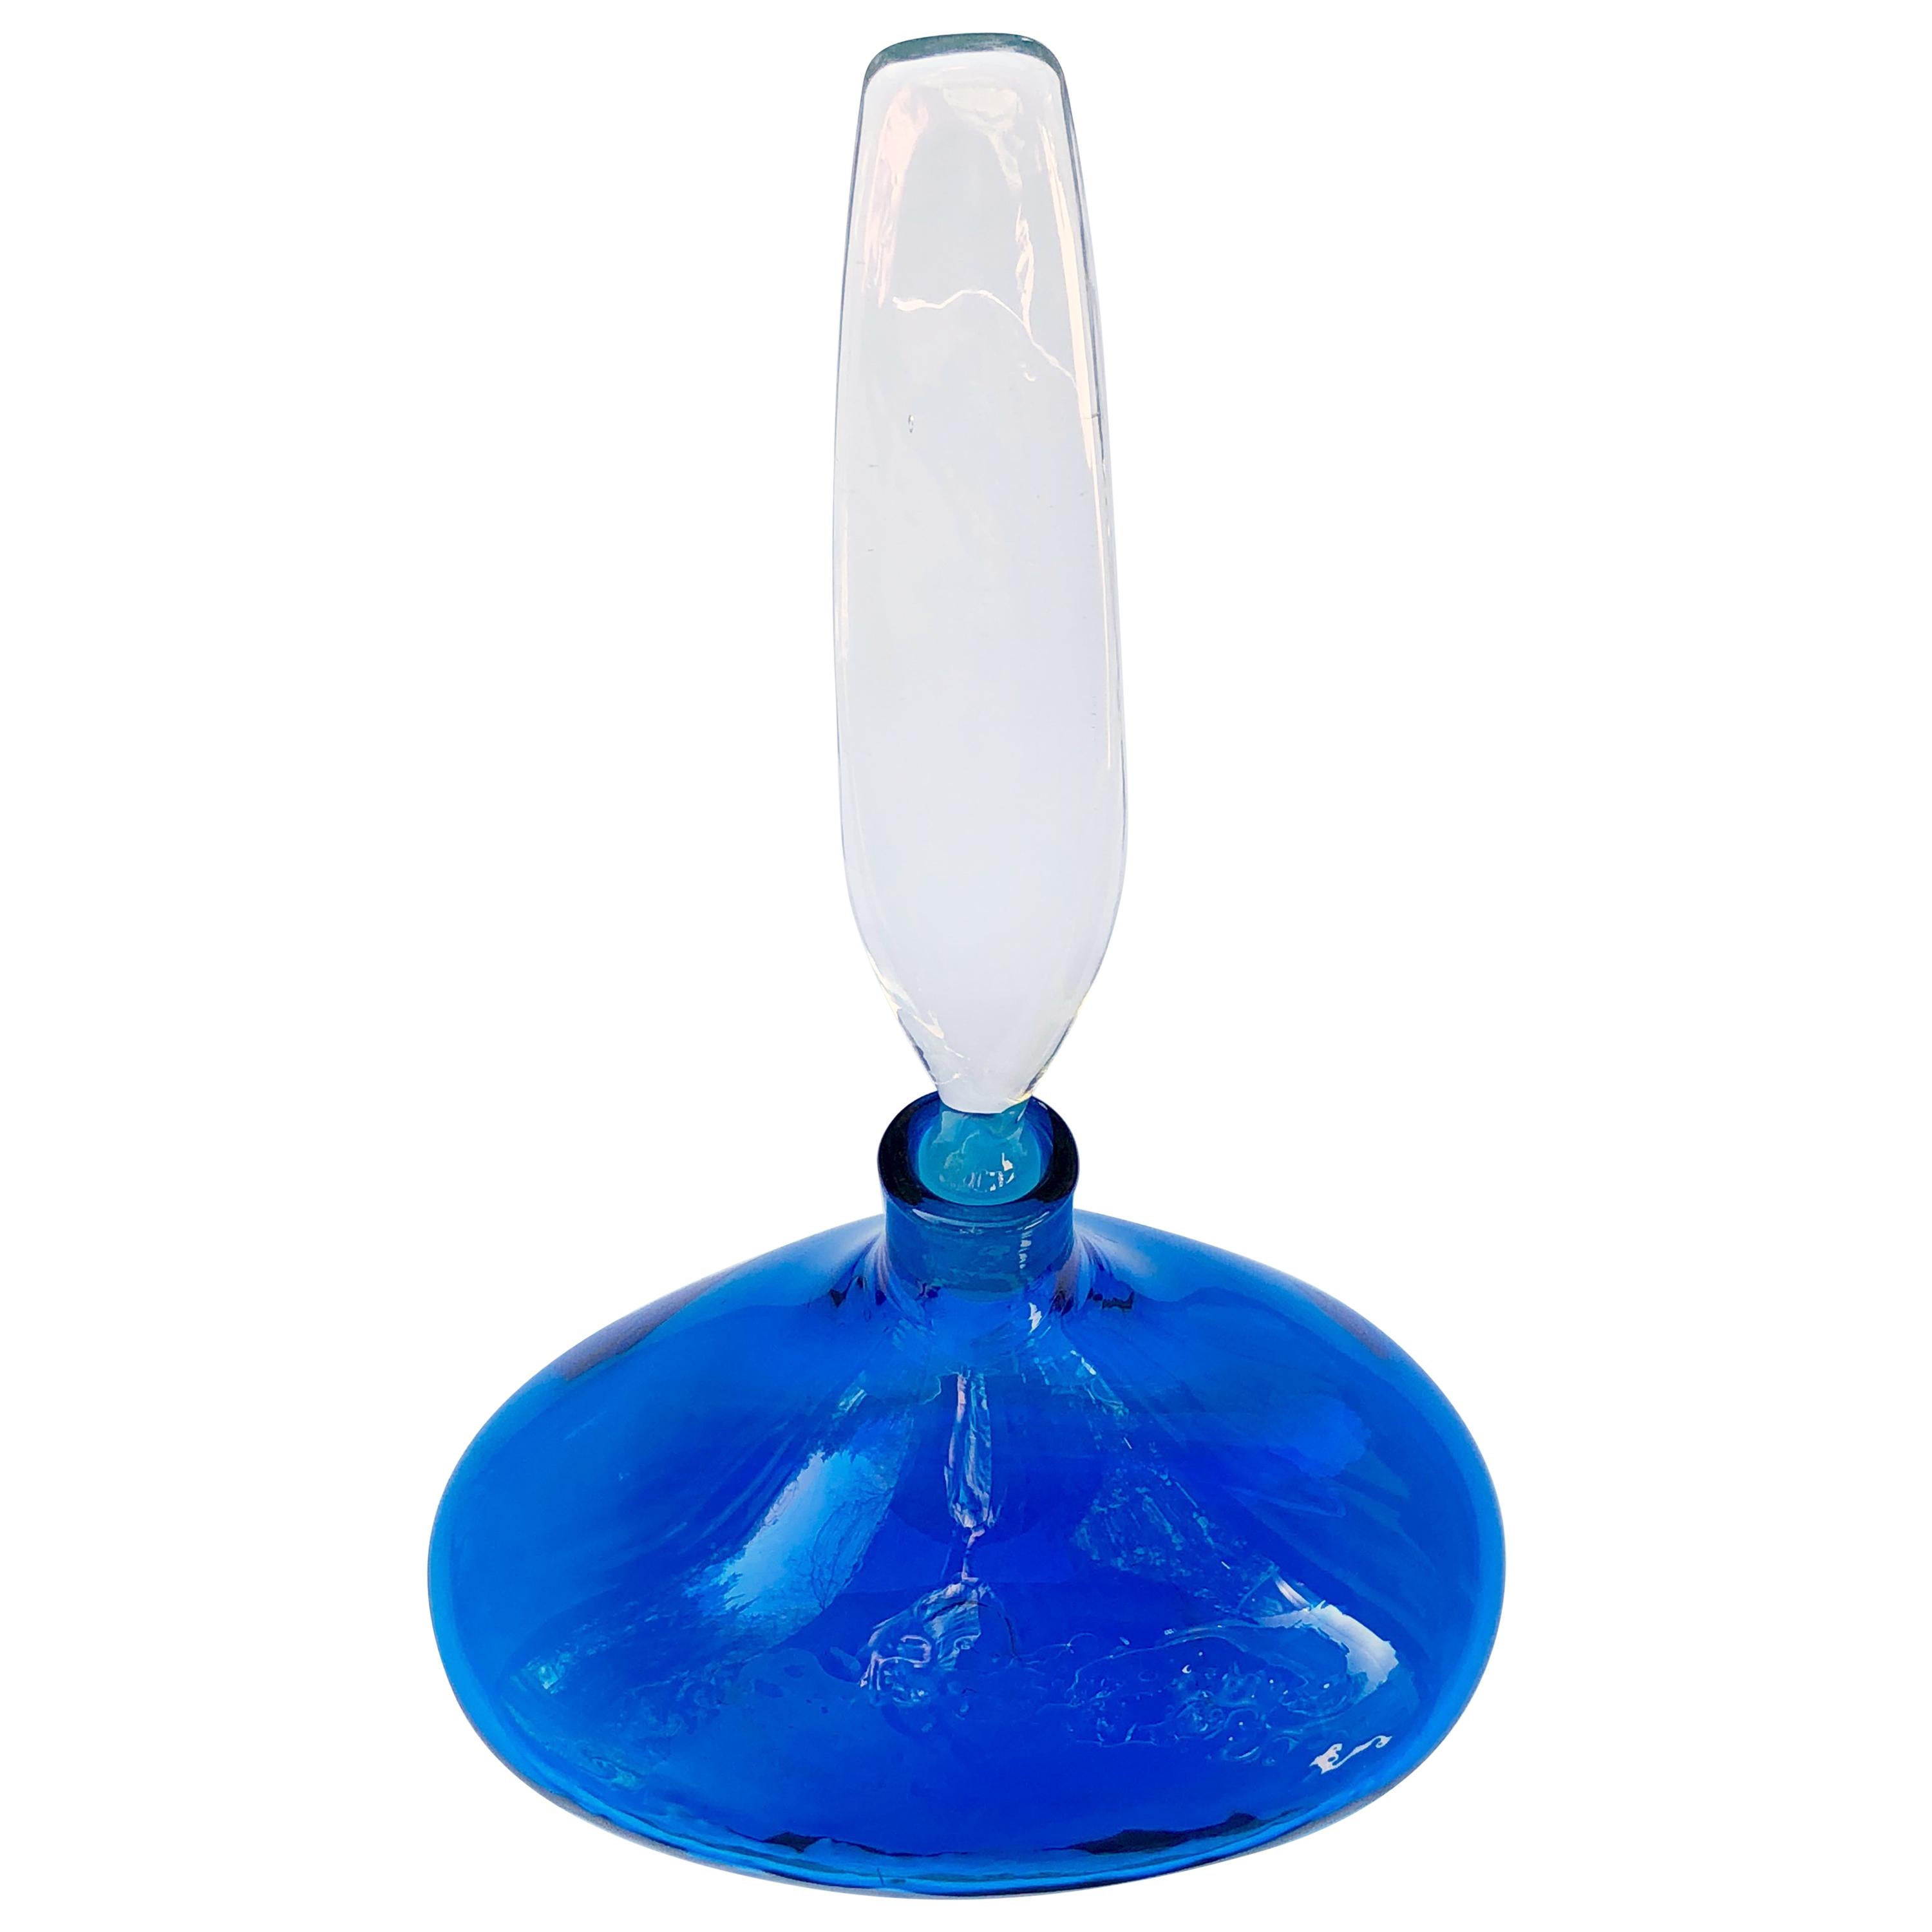 Vibrant American Blue Glass Ships Decanter, Blenko Glass